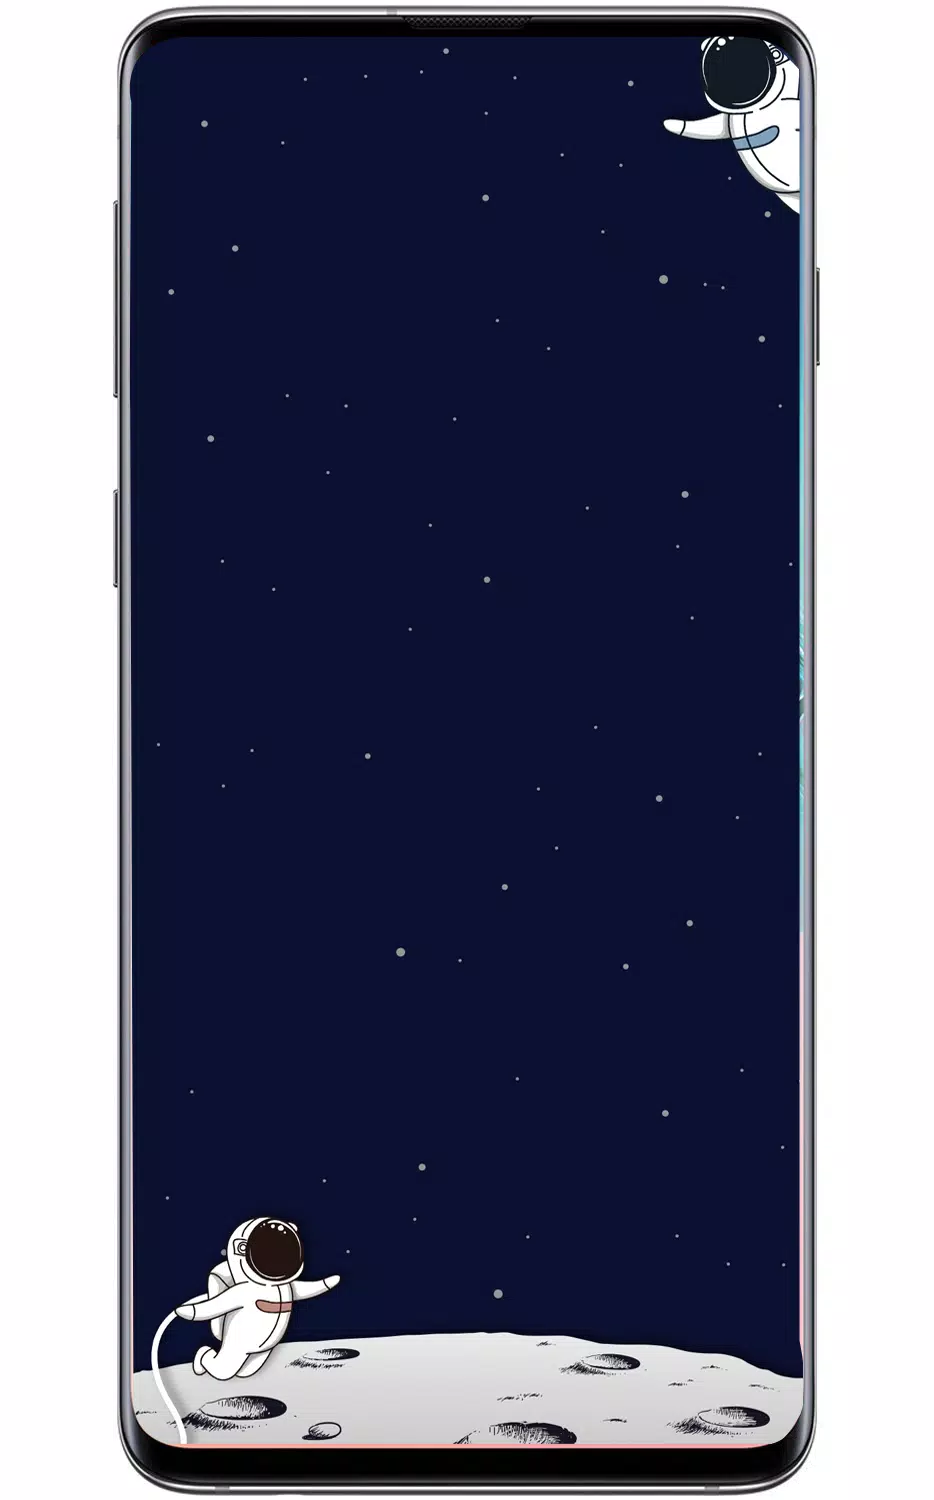 APK S10 Wallpaper - Đây chính là ứng dụng hình nền tuyệt vời cho Galaxy S10 của bạn. Những hình ảnh đẹp mắt, sắc nét, độ phân giải cao sẽ giúp cho màn hình của bạn trở nên đẹp hơn bao giờ hết. Không những thế, bạn cũng có thể dễ dàng cài đặt và chỉnh sửa theo ý muốn. Hãy cùng trải nghiệm sự tiện ích tuyệt vời của APK S10 Wallpaper nhé!